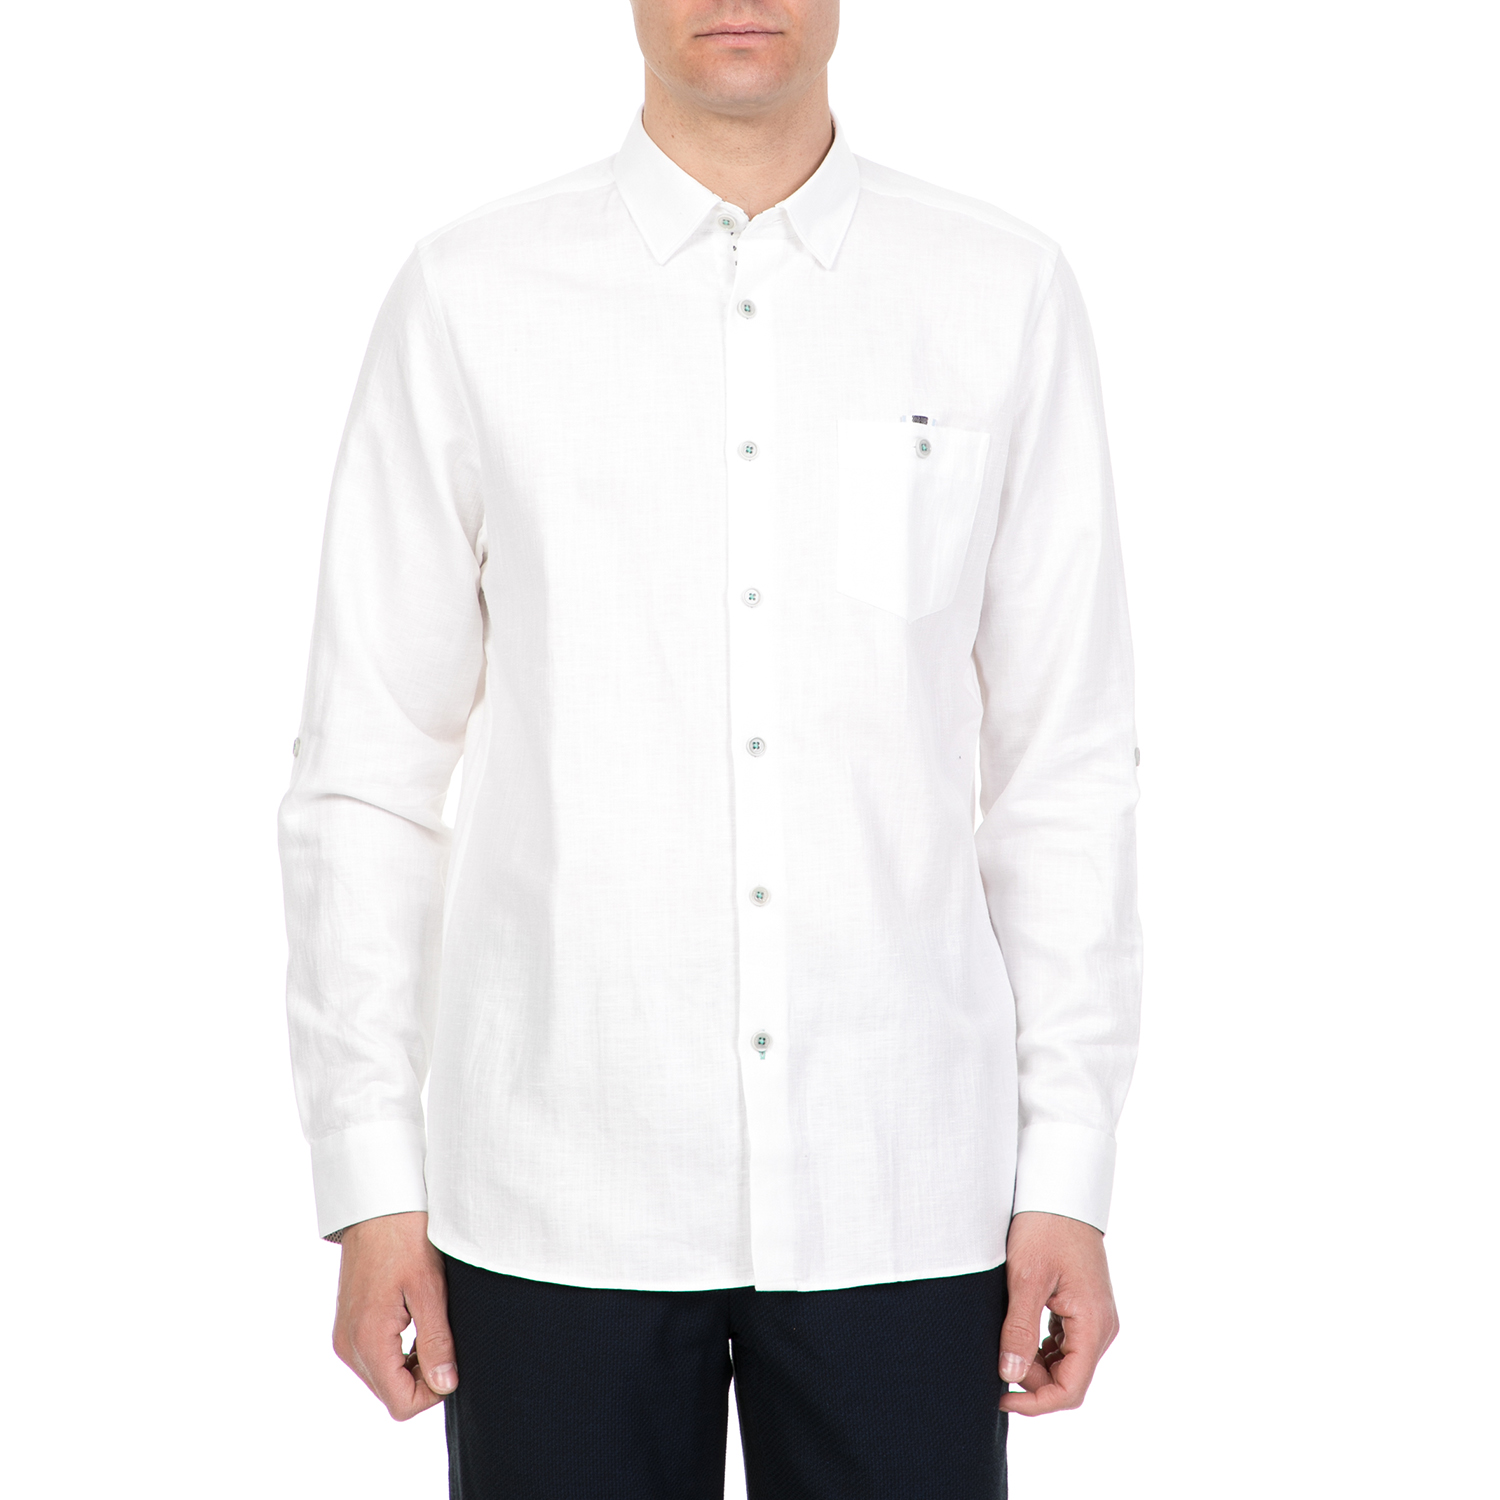 Ανδρικά/Ρούχα/Πουκάμισα/Μακρυμάνικα TED BAKER - Ανδρικό μακρυμάνικο λινό πουκάμισο JAAMES TED BAKER λευκό